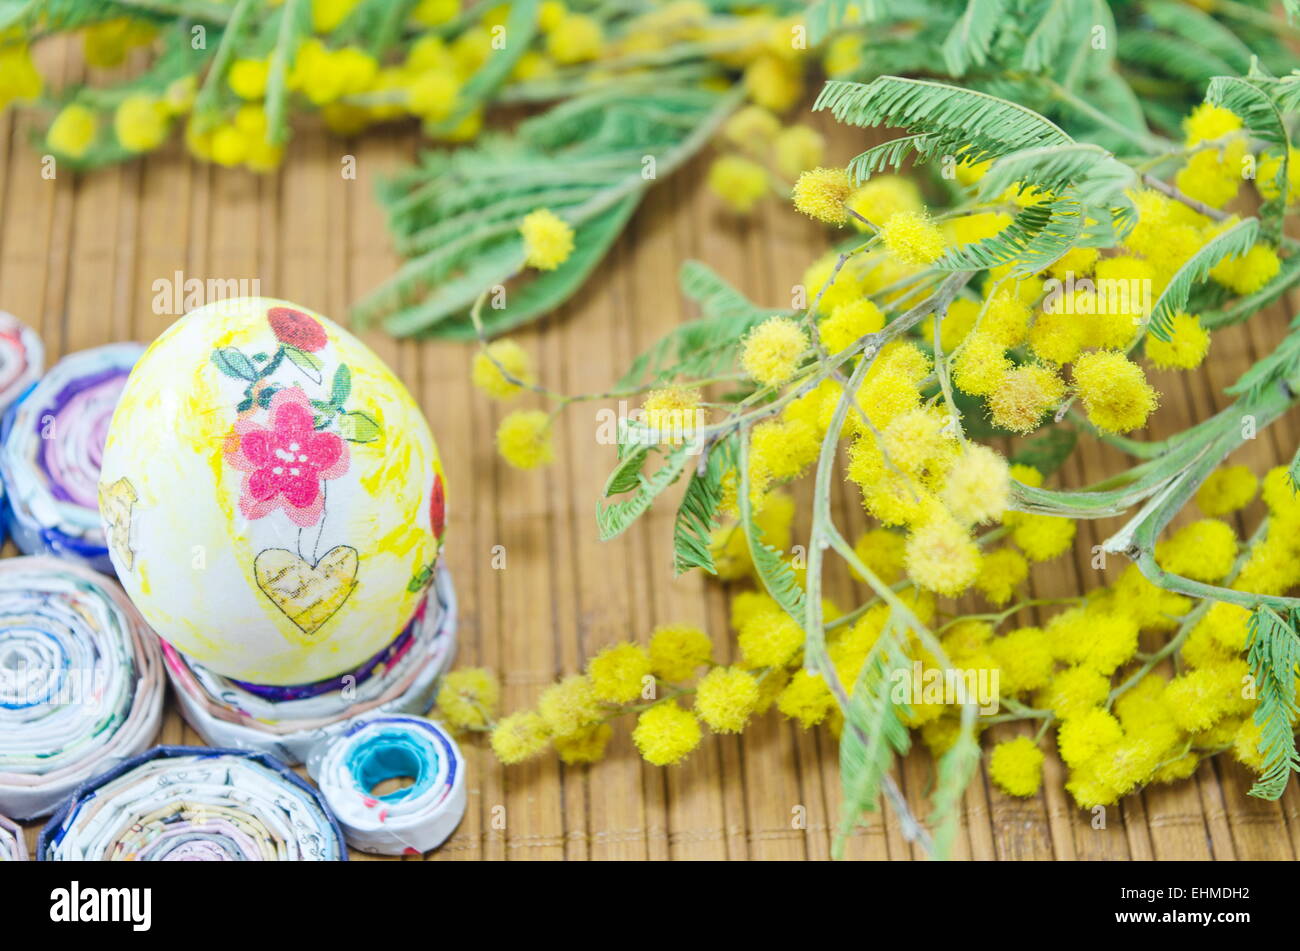 Decoupage peint à la main et oeufs de Pâques fleurs mimosa Banque D'Images